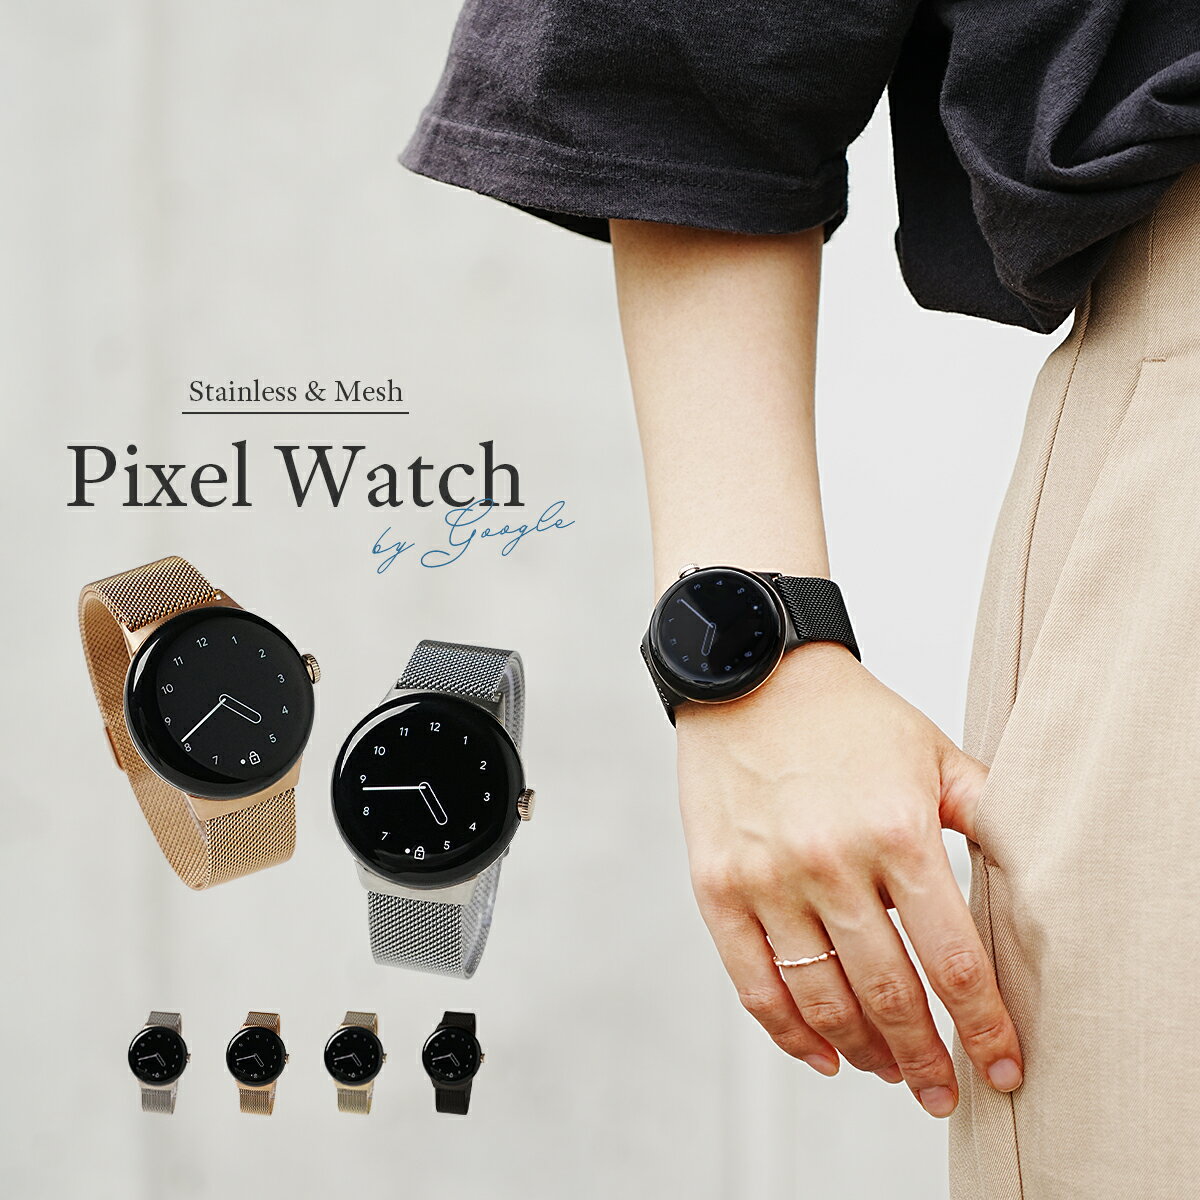 【最大30%offクーポン】 ピクセルウォッチ Pixel Watch バンド Pixel Watch 磁気バンド ケース Google Pixel Watch ベルト Google Pixel Watch バンド ミラネーゼループ メタル バンド グーグル ウオッチ 付け替え 簡単 かわいい おしゃれ レディース 女性